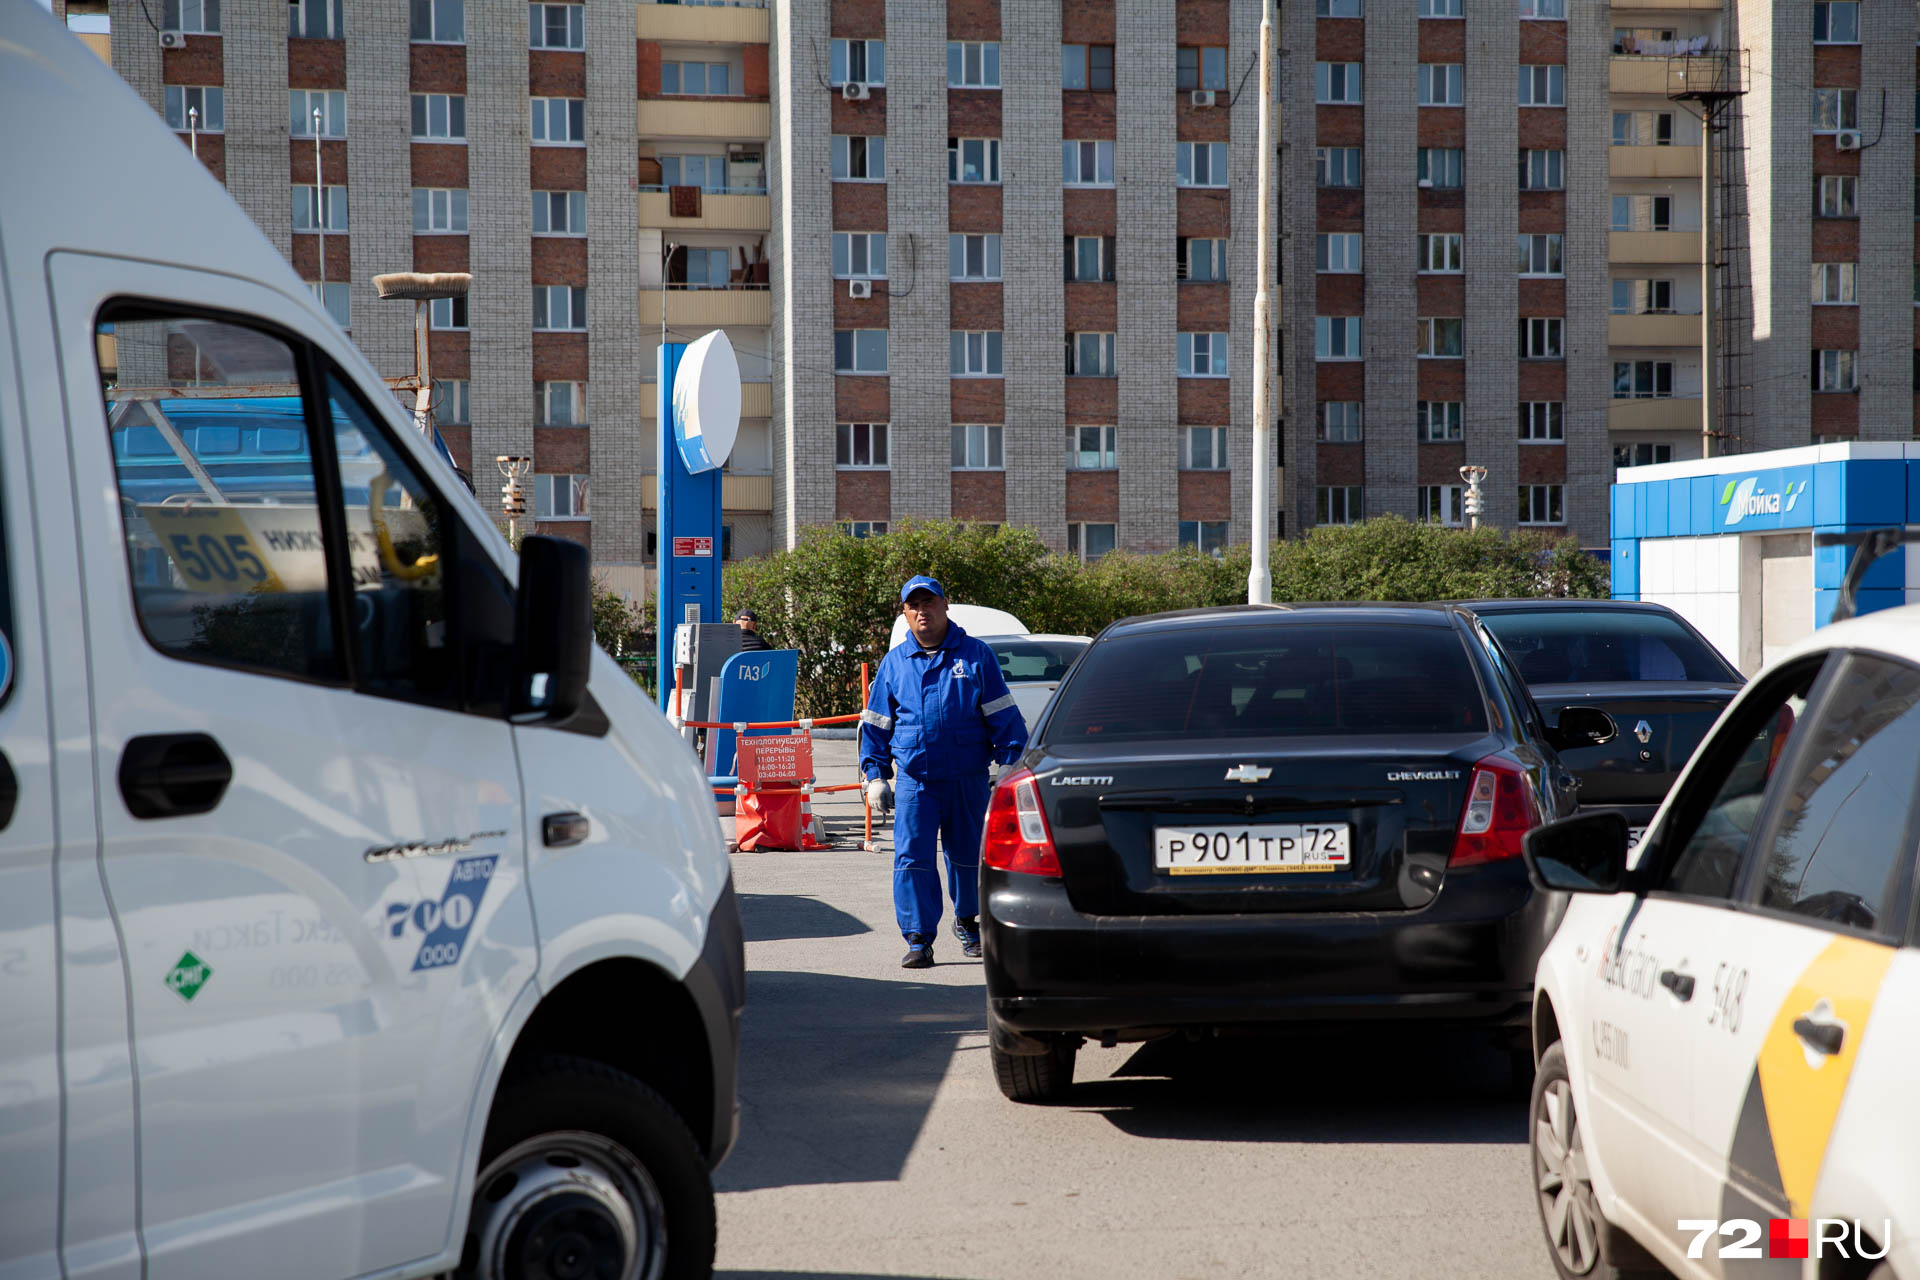 В Тюмени расположены десятки автомобильных заправок с газовым топливом. Многие из них принадлежат «Газпром Нефти» — крупному игроку в этой сфере не только в нашем регионе, но и по всей стране